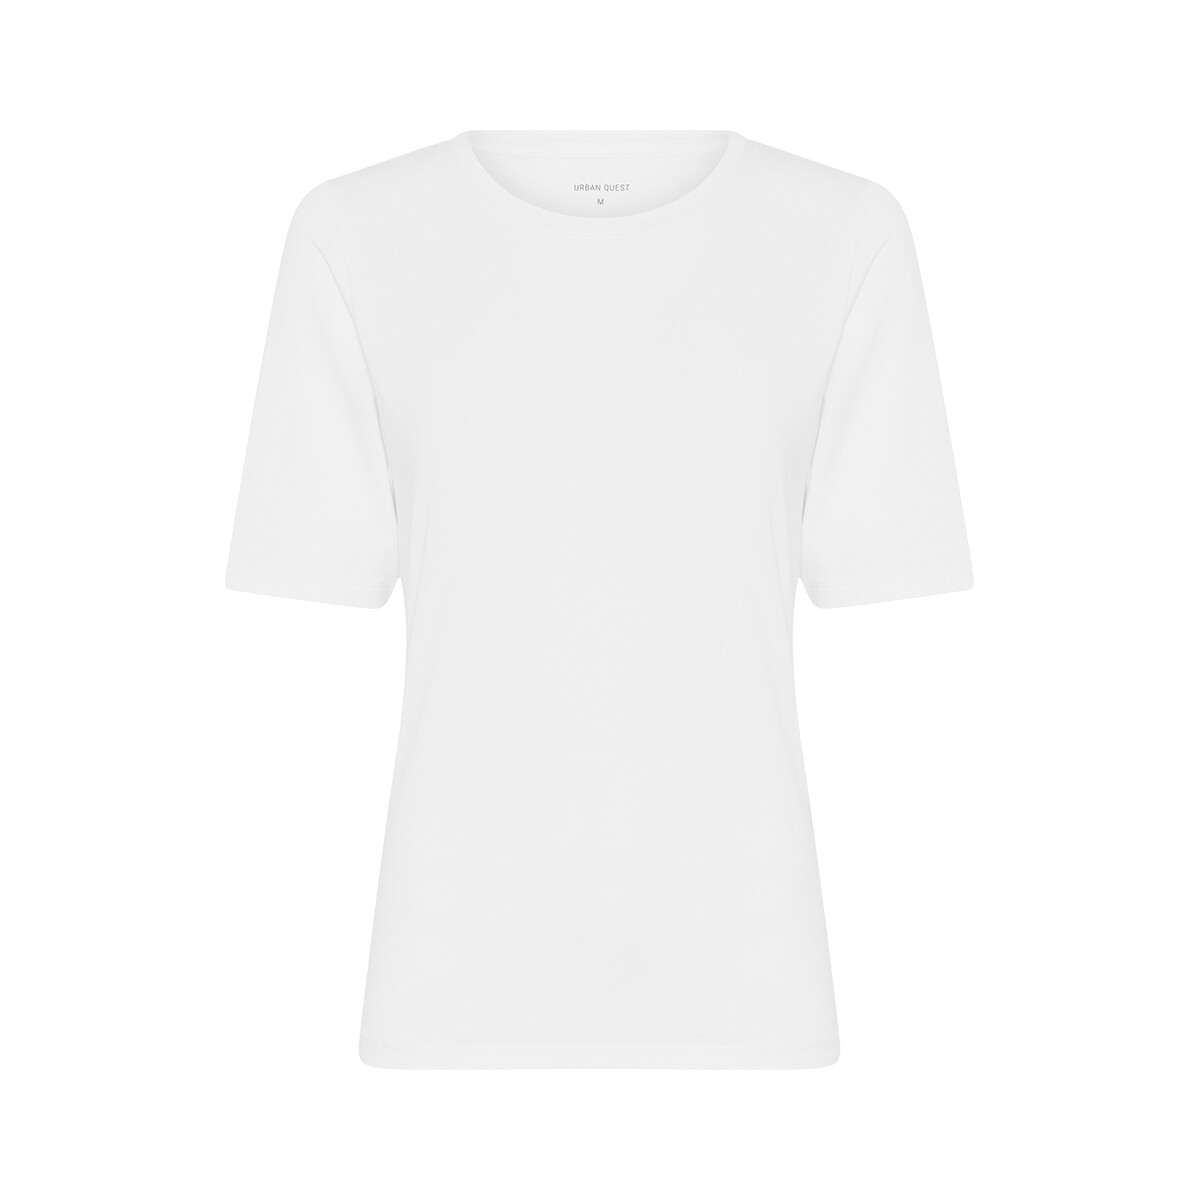 Se Urban Quest Bamboo Slim Fit T-shirt, Farve: Hvid, Størrelse: S, Dame hos Netlingeri.dk